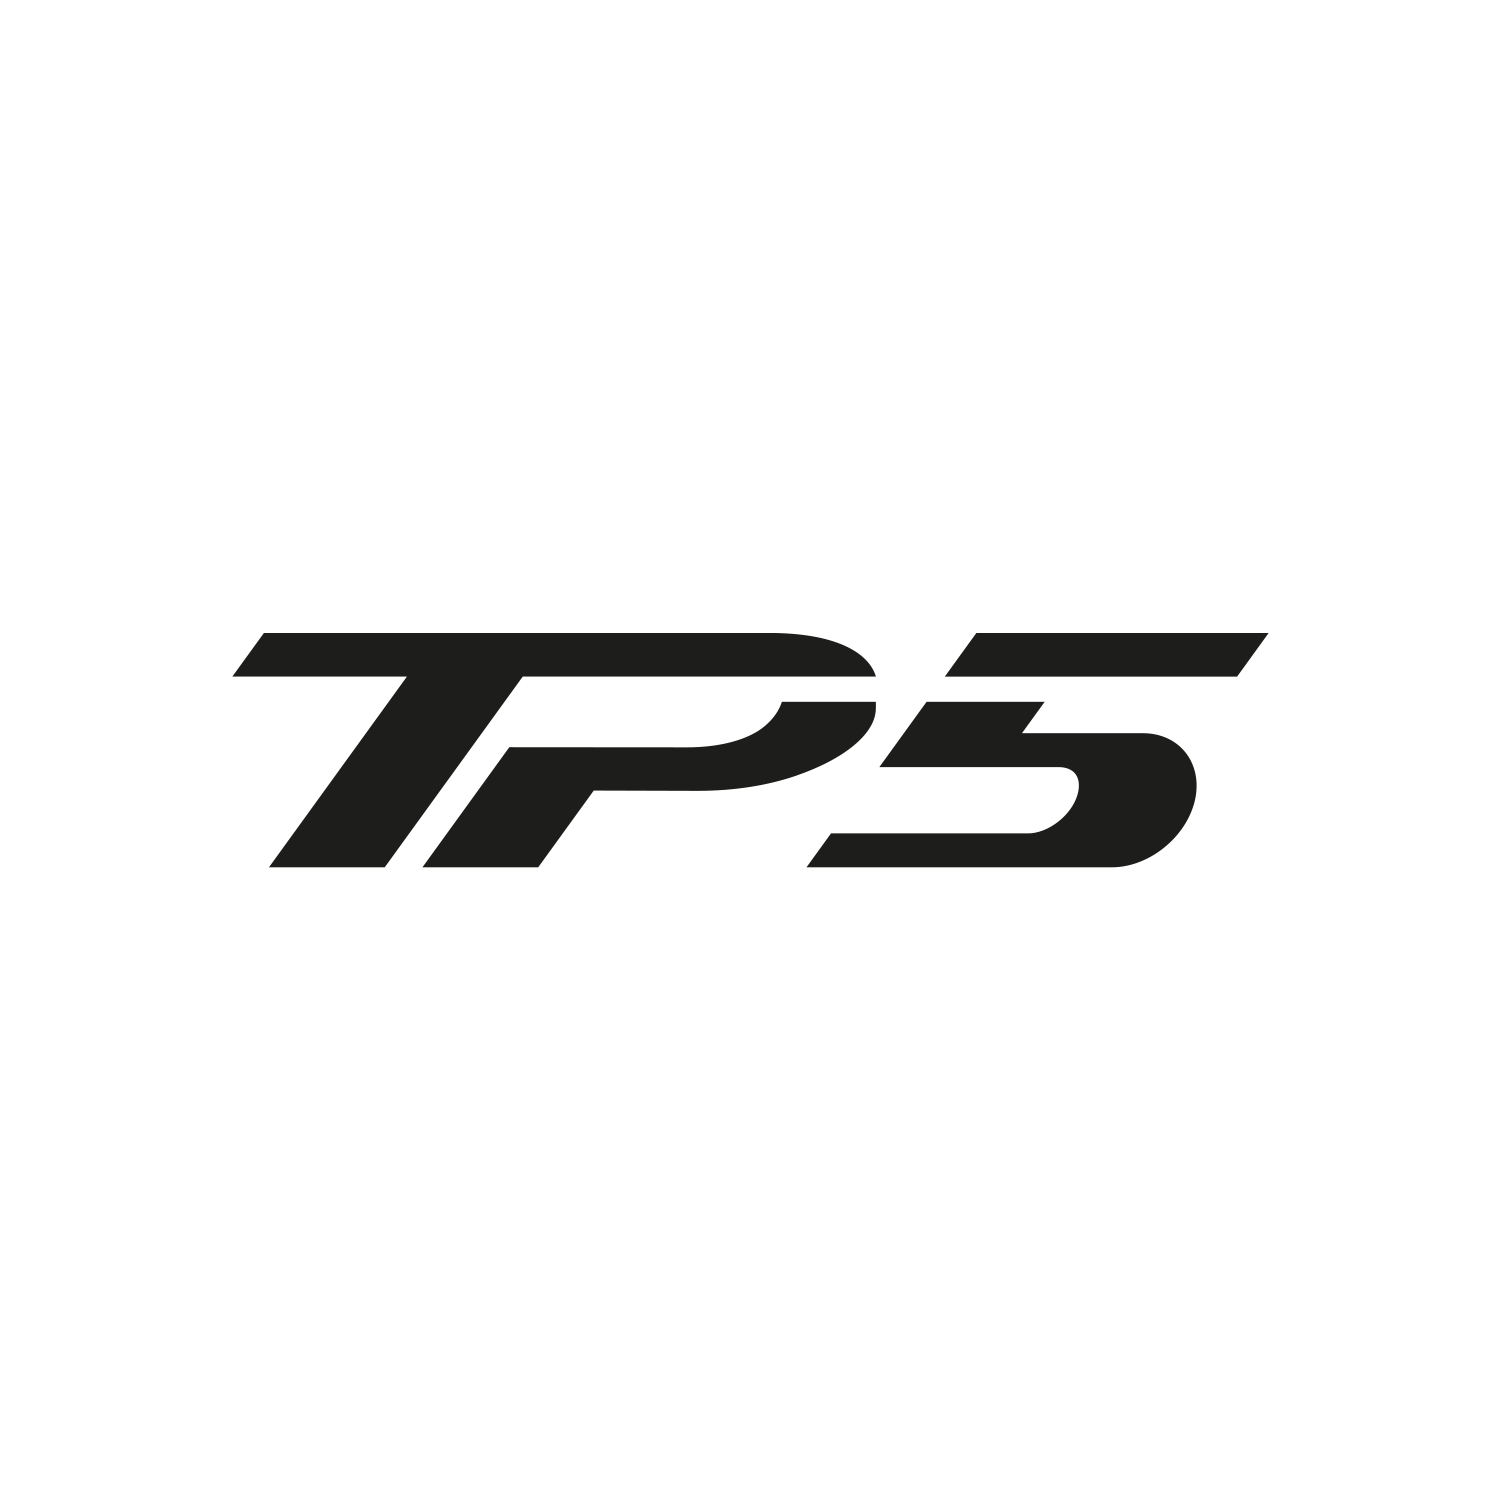 TP5_logo.png